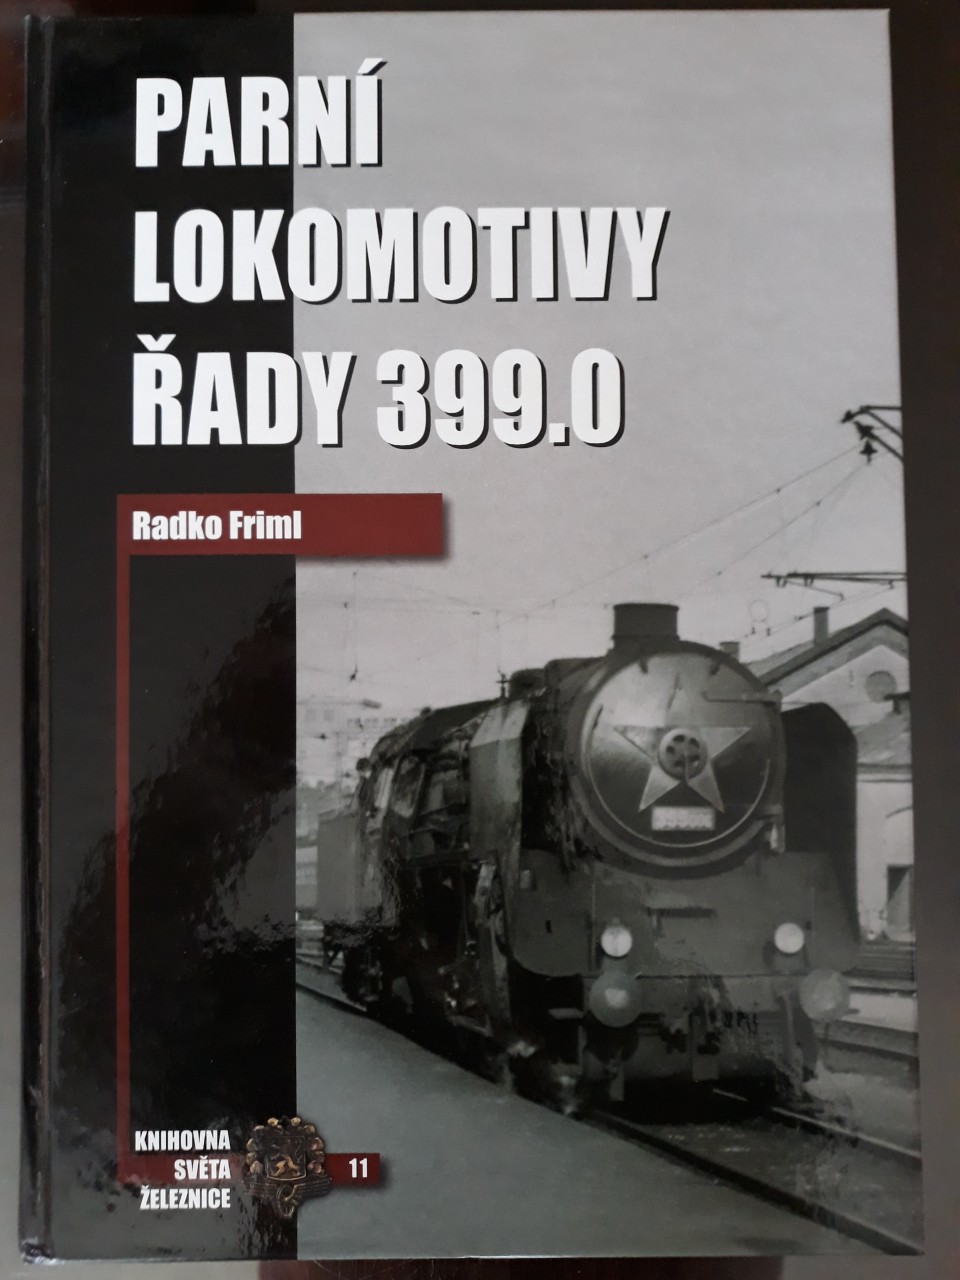 Parn lokompotivy ady 399.0 - Radko Friml 2007